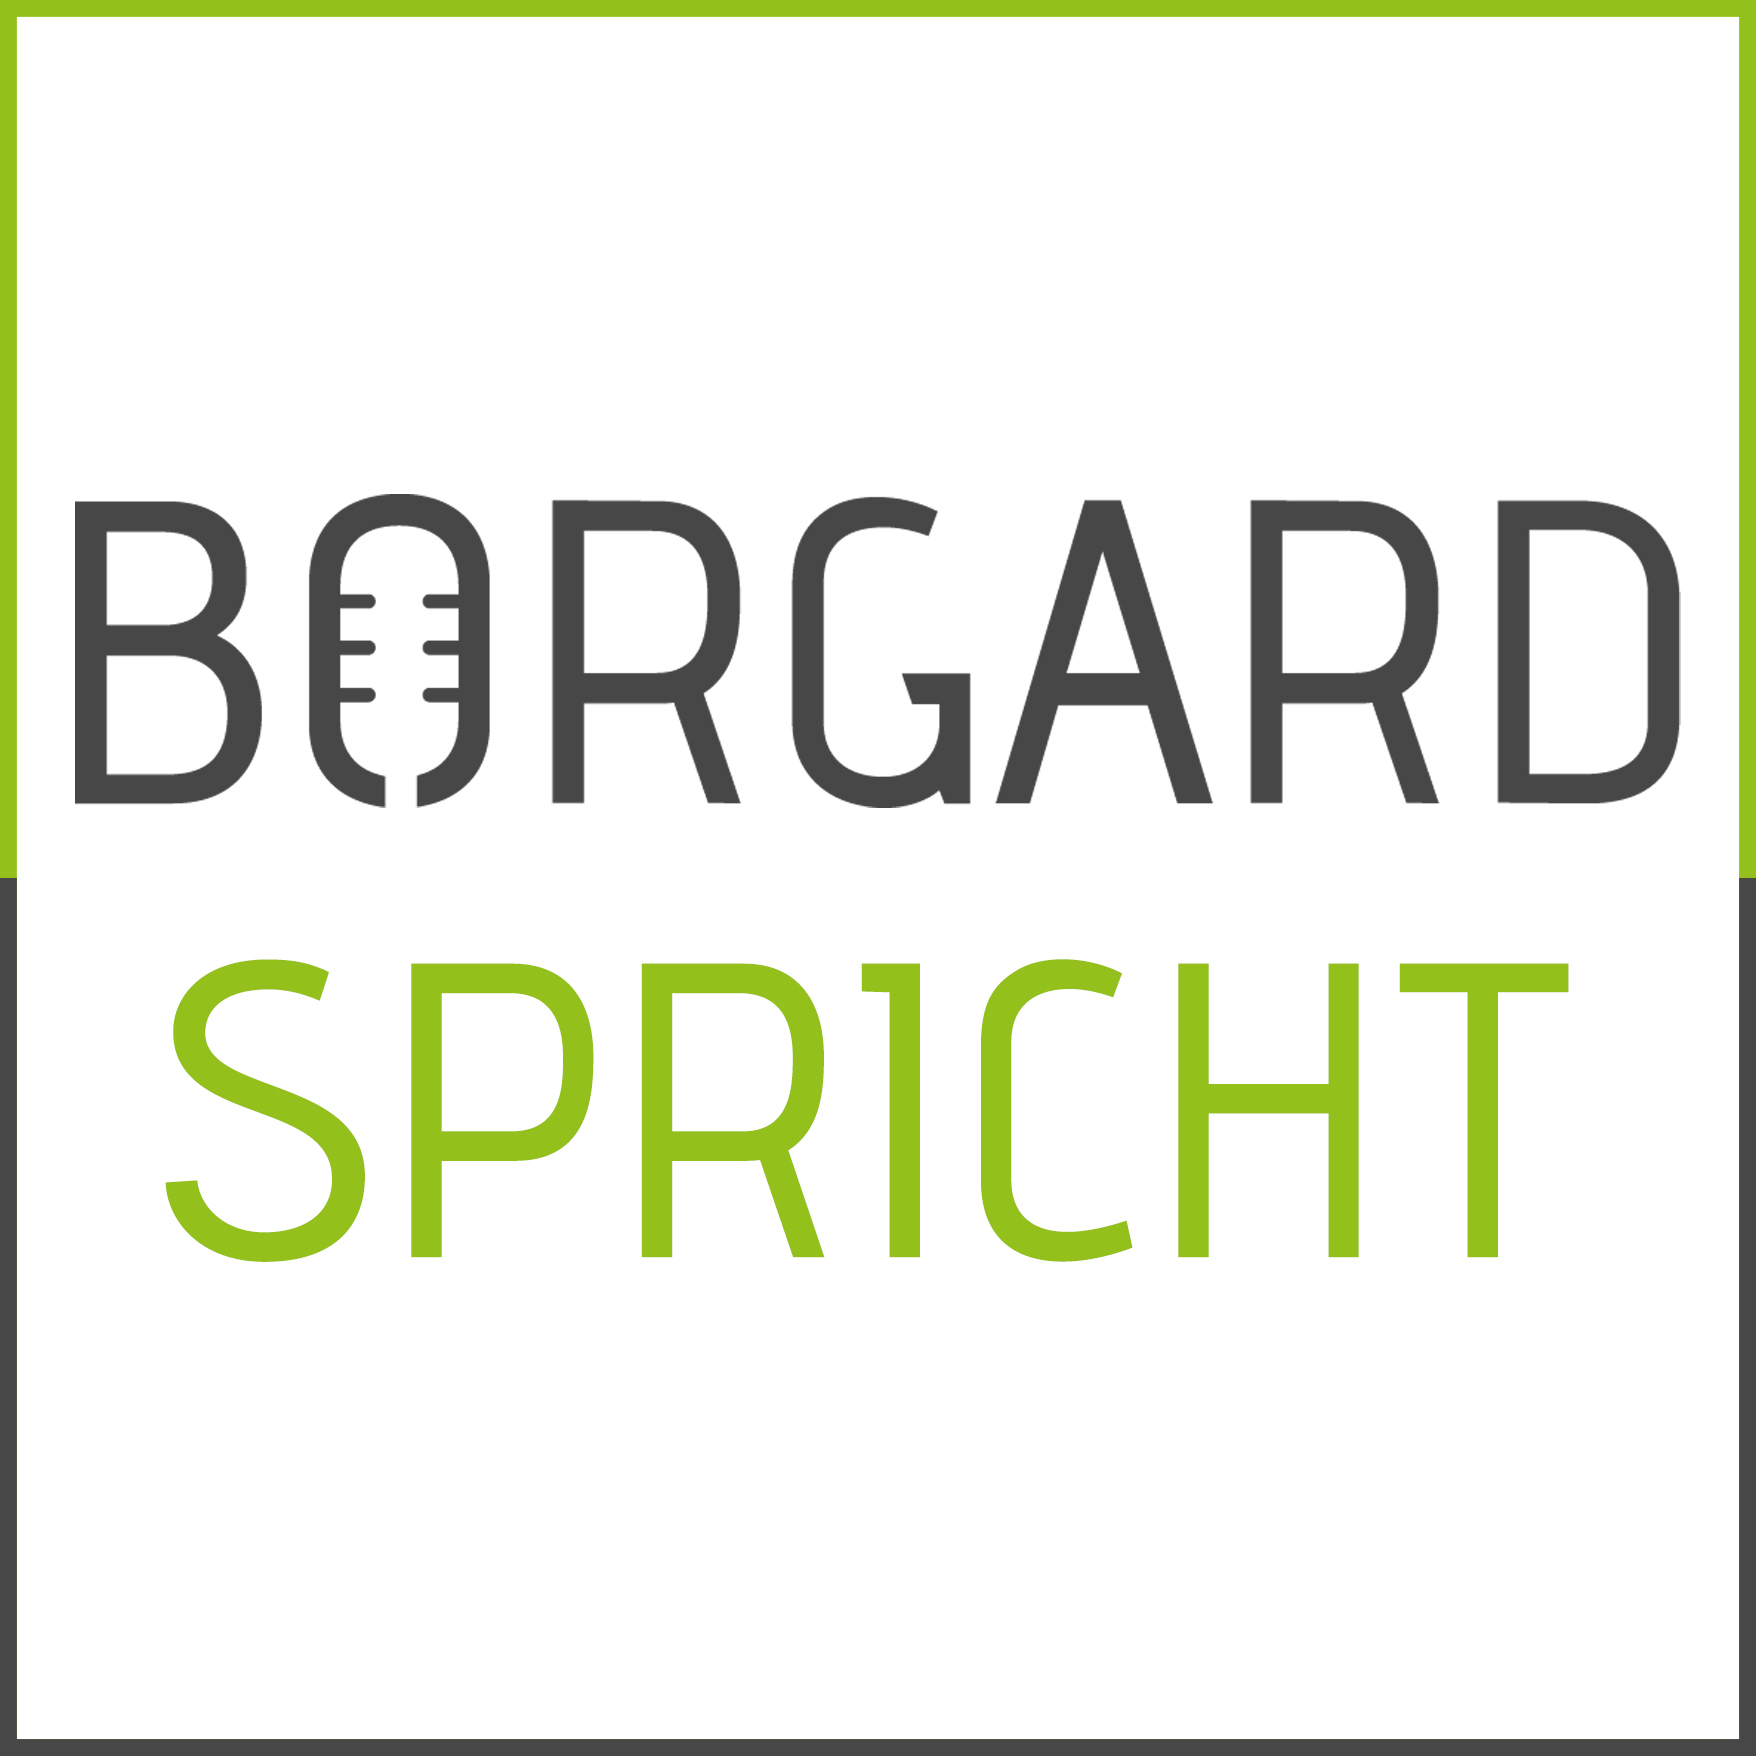 Borgard spricht - der Sprecher Podcast